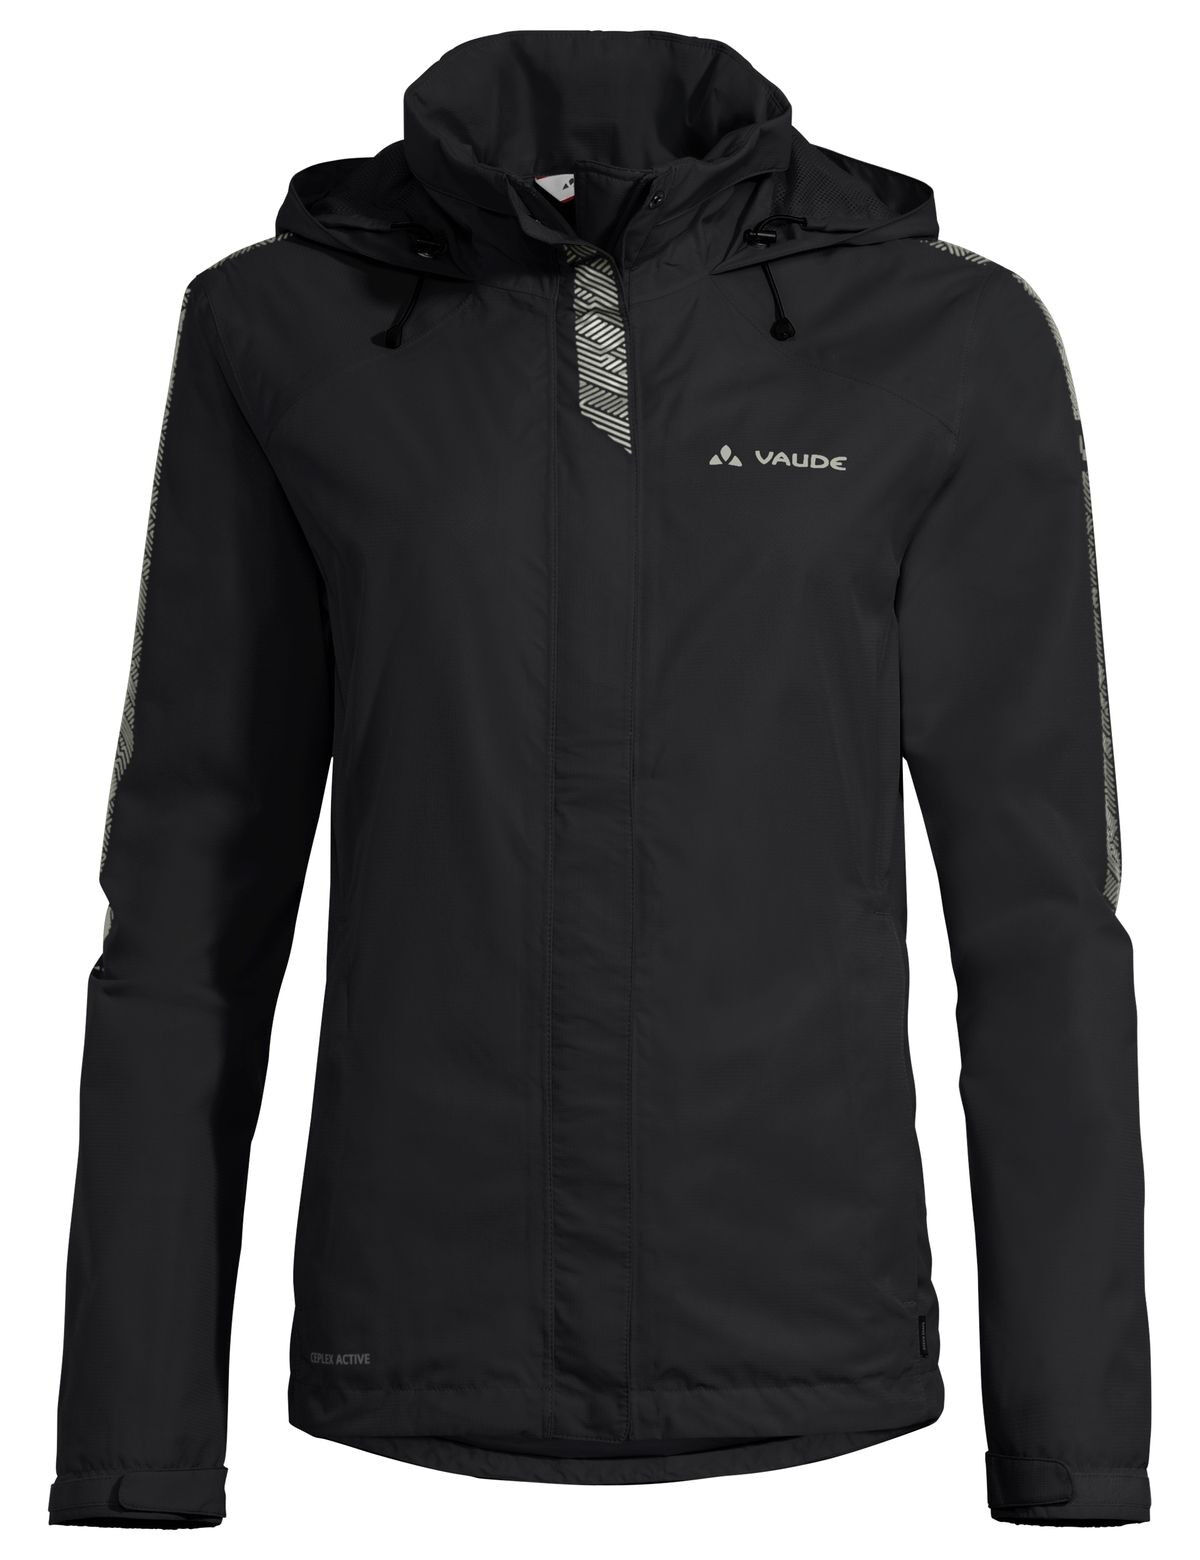 Vaude Luminum Jacket II - Waterproof jacket - Women's